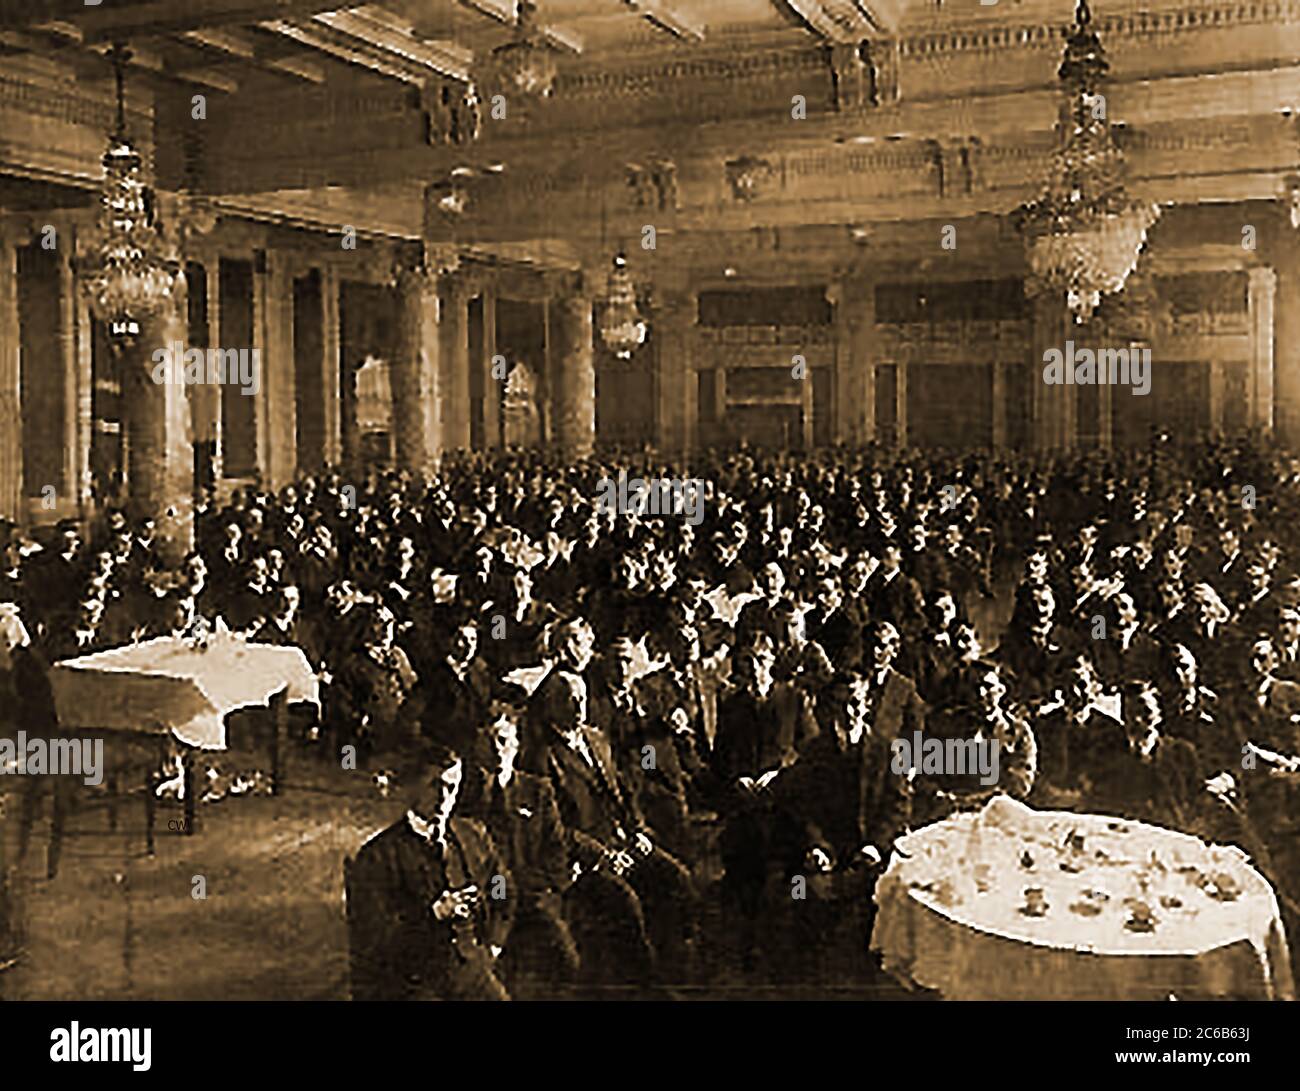 Ein gedrucktes Foto von 1920 Teilnehmern der prominenten Electrical Co-Operators Conference Province of Quebec, Kanada. (Vermutlich in Ottawa) Stockfoto